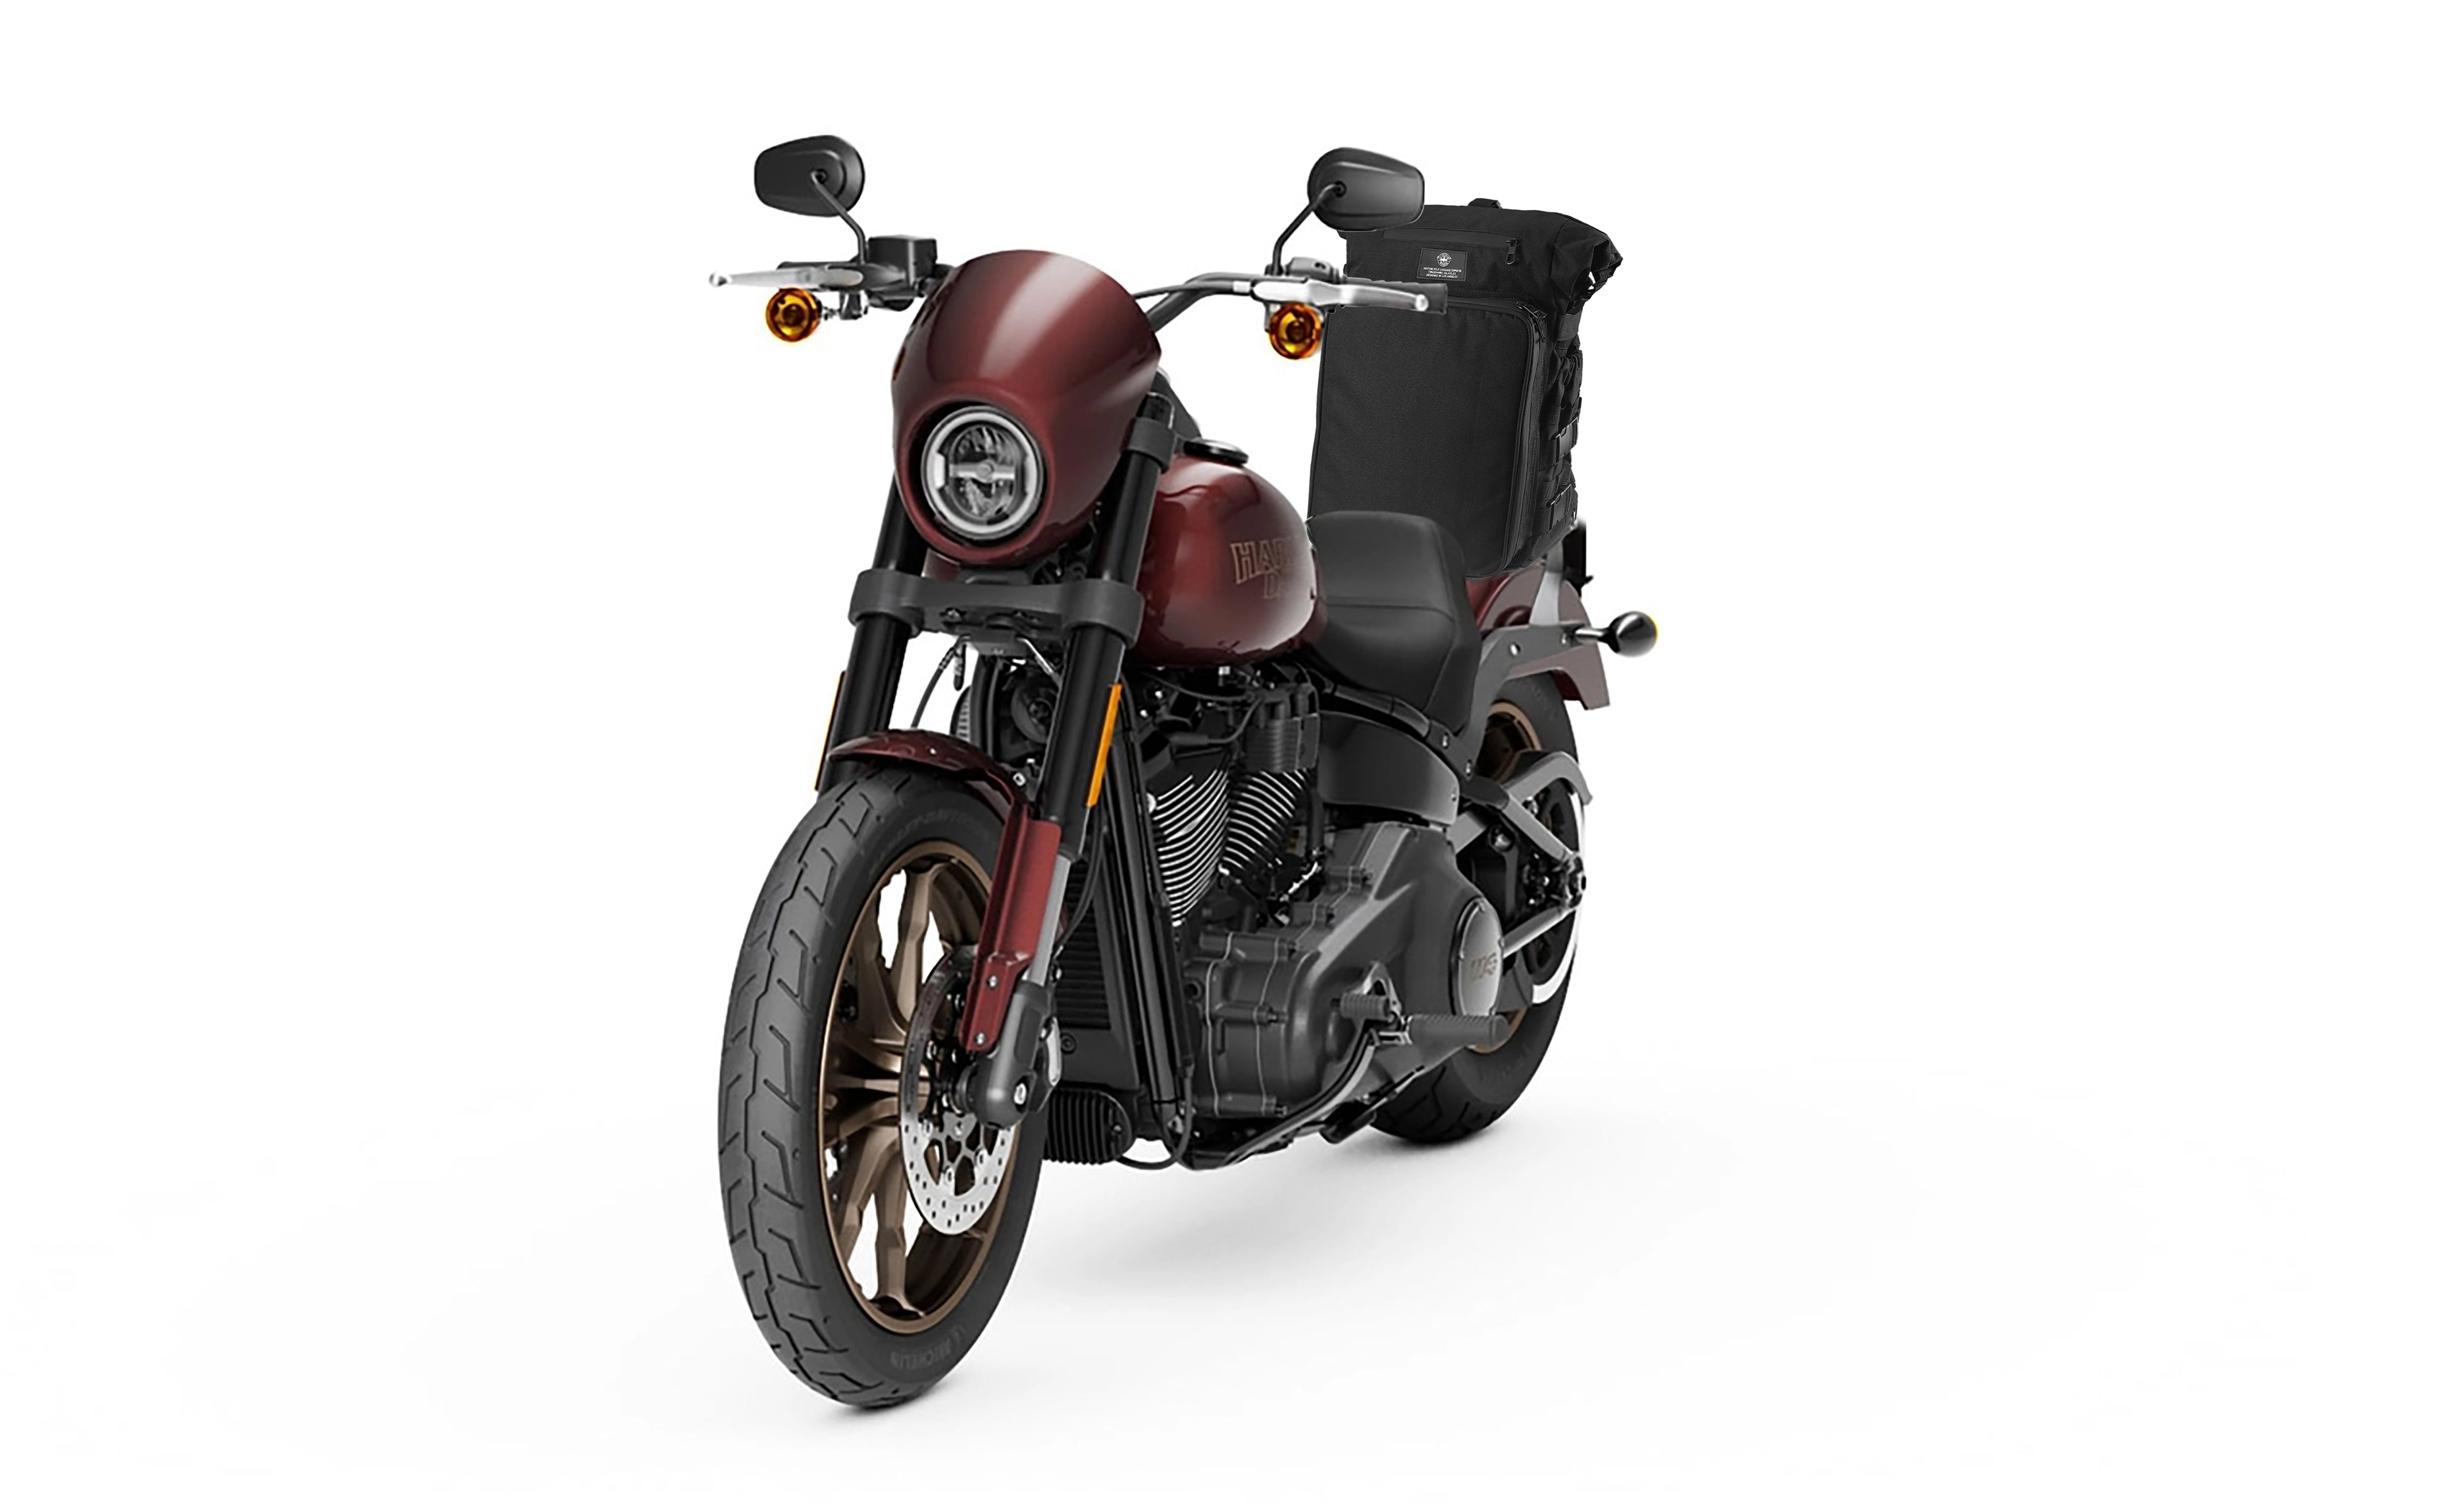 Viking Renegade XL Yamaha Motorcycle Tail Bag Bag on Bike View @expand